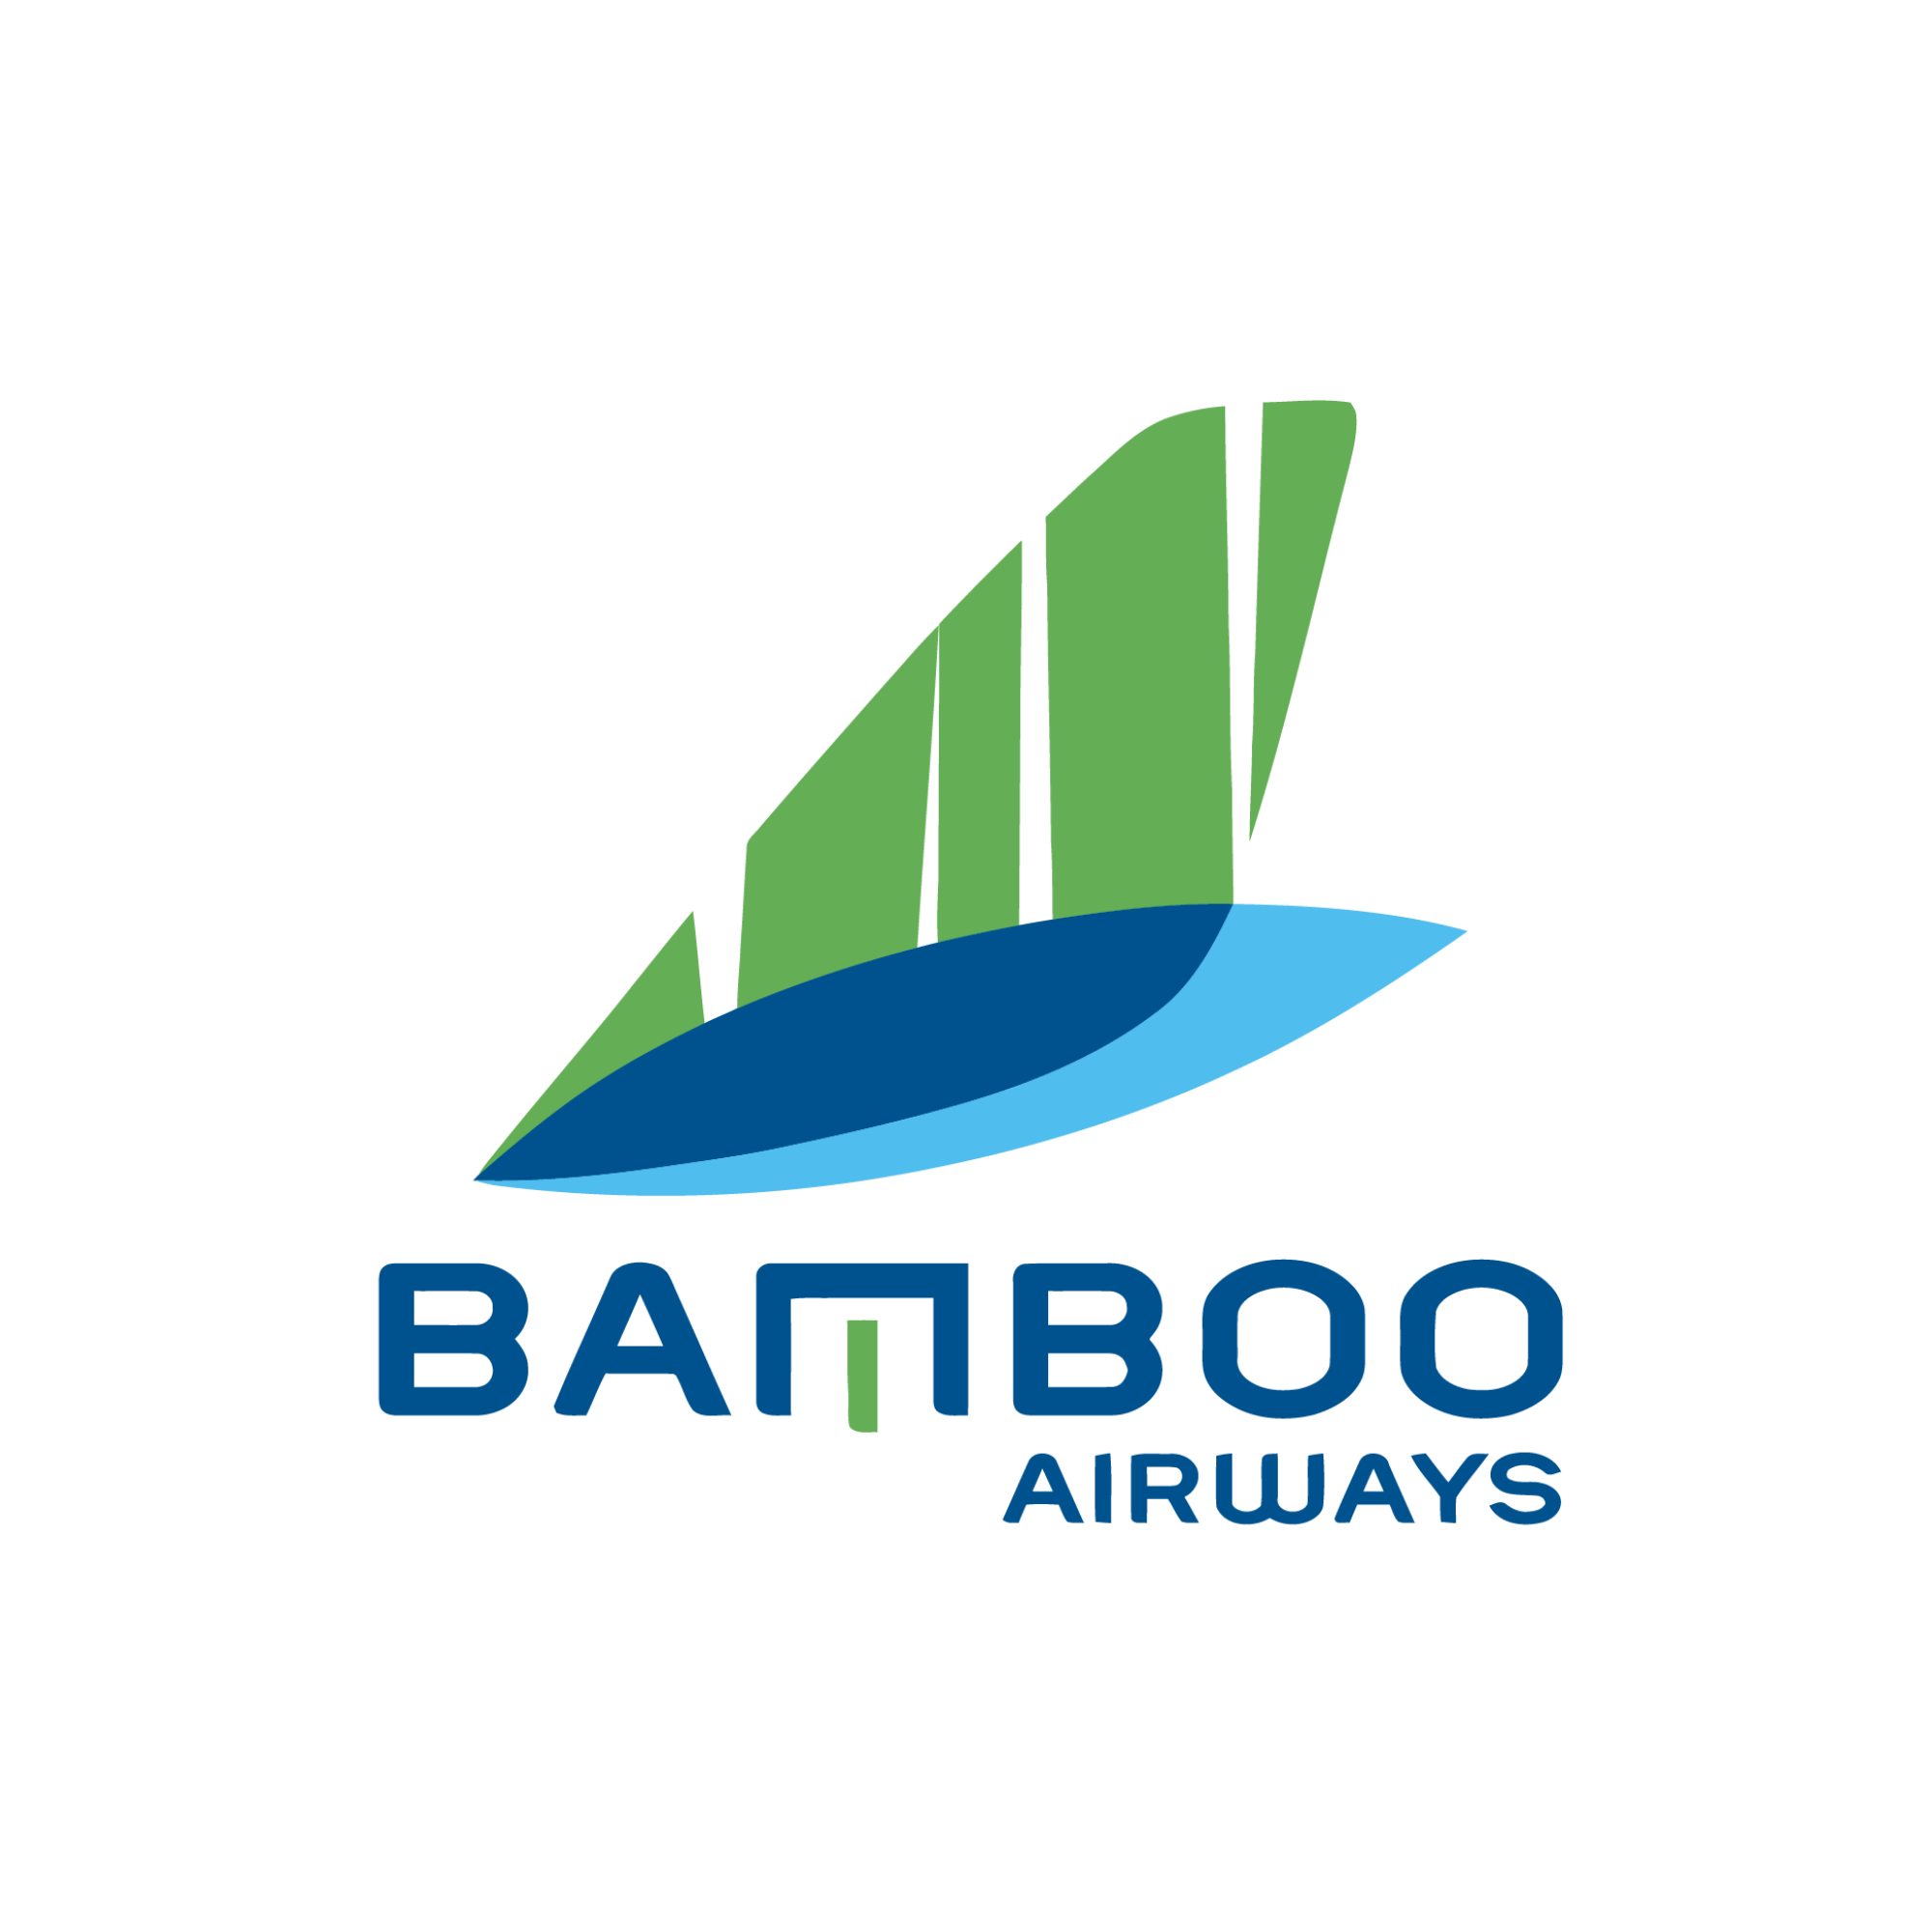 TBamboo Airways tuyển dụng  Nhân Viên Phục Vụ Phòng khách Hạng Thương Gia (CXR) - Lounge Attendant at CamRanh Airport